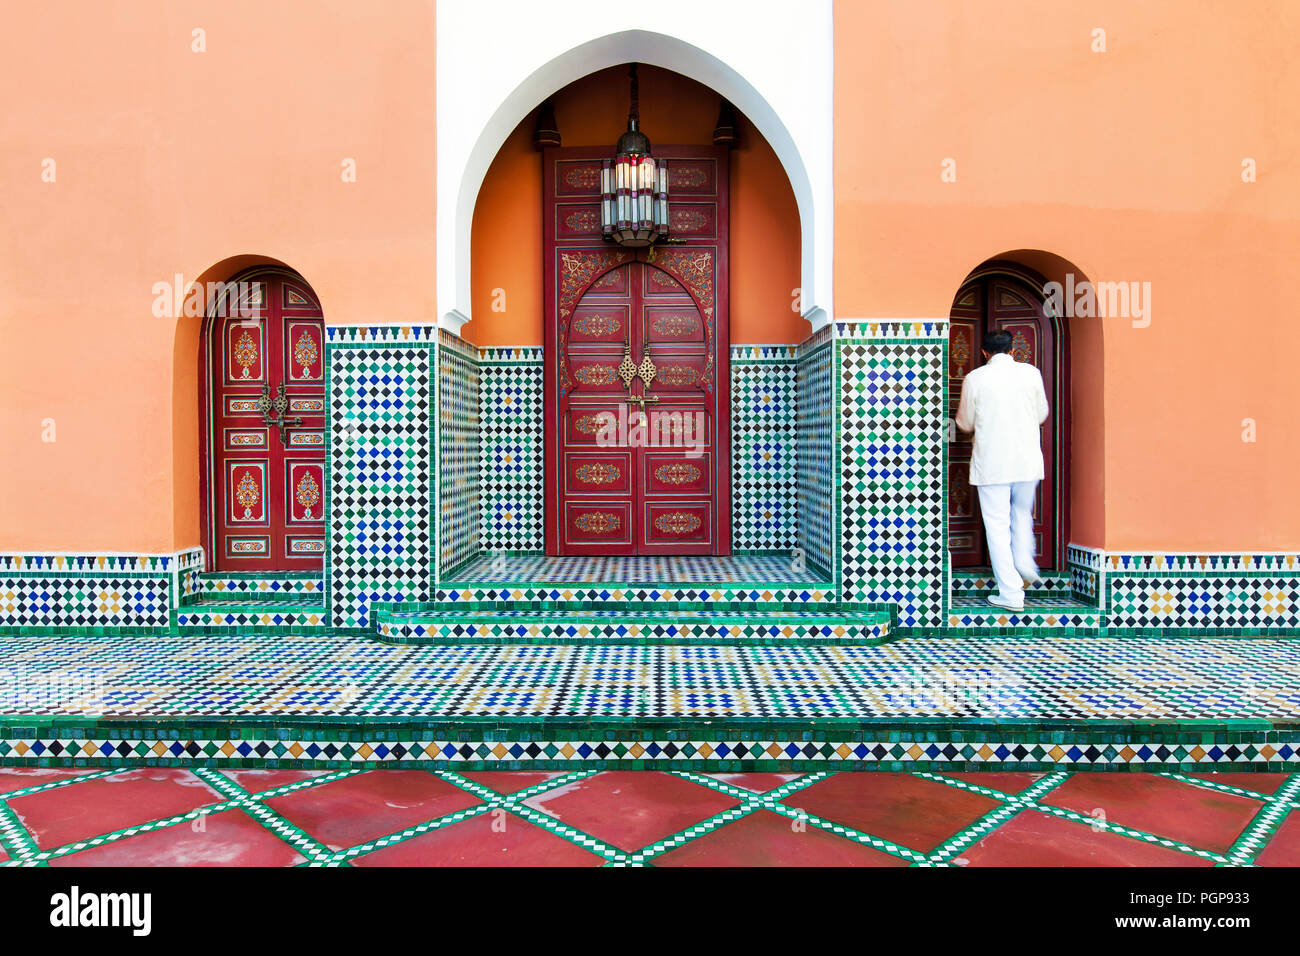 Marokkanische Fliesen- außen mit mehreren Bögen und kunstvoll bemalte Türen eines eleganten Garten Pavillon. Ort: Marrakesch Hotel La Mamounia Stockfoto